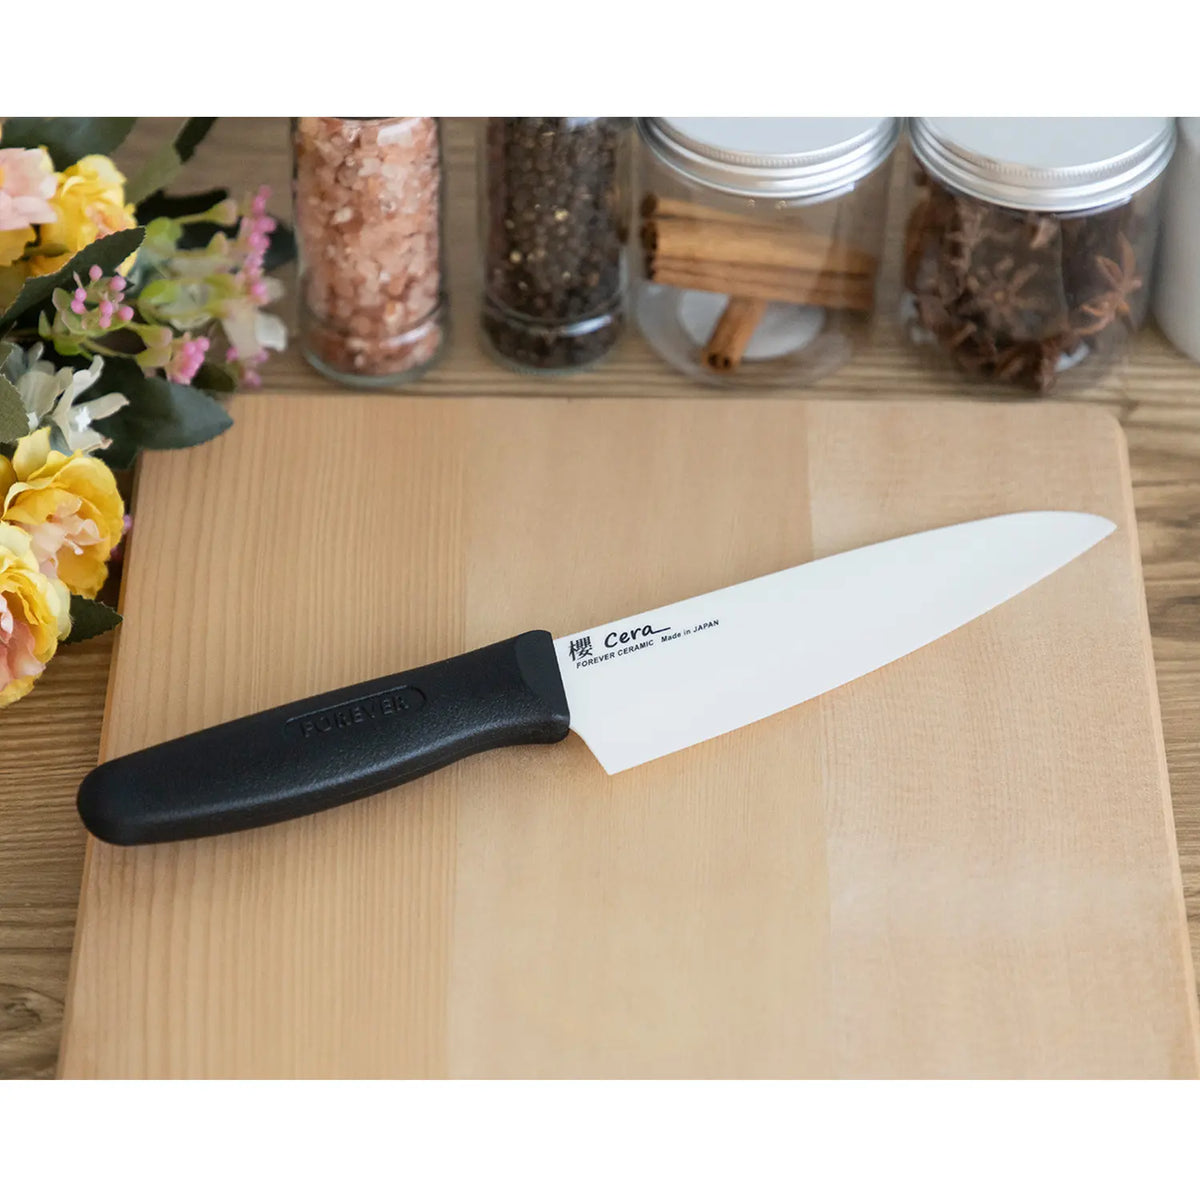 FOREVER Sakura Cera Ceramic Kitchen Knife